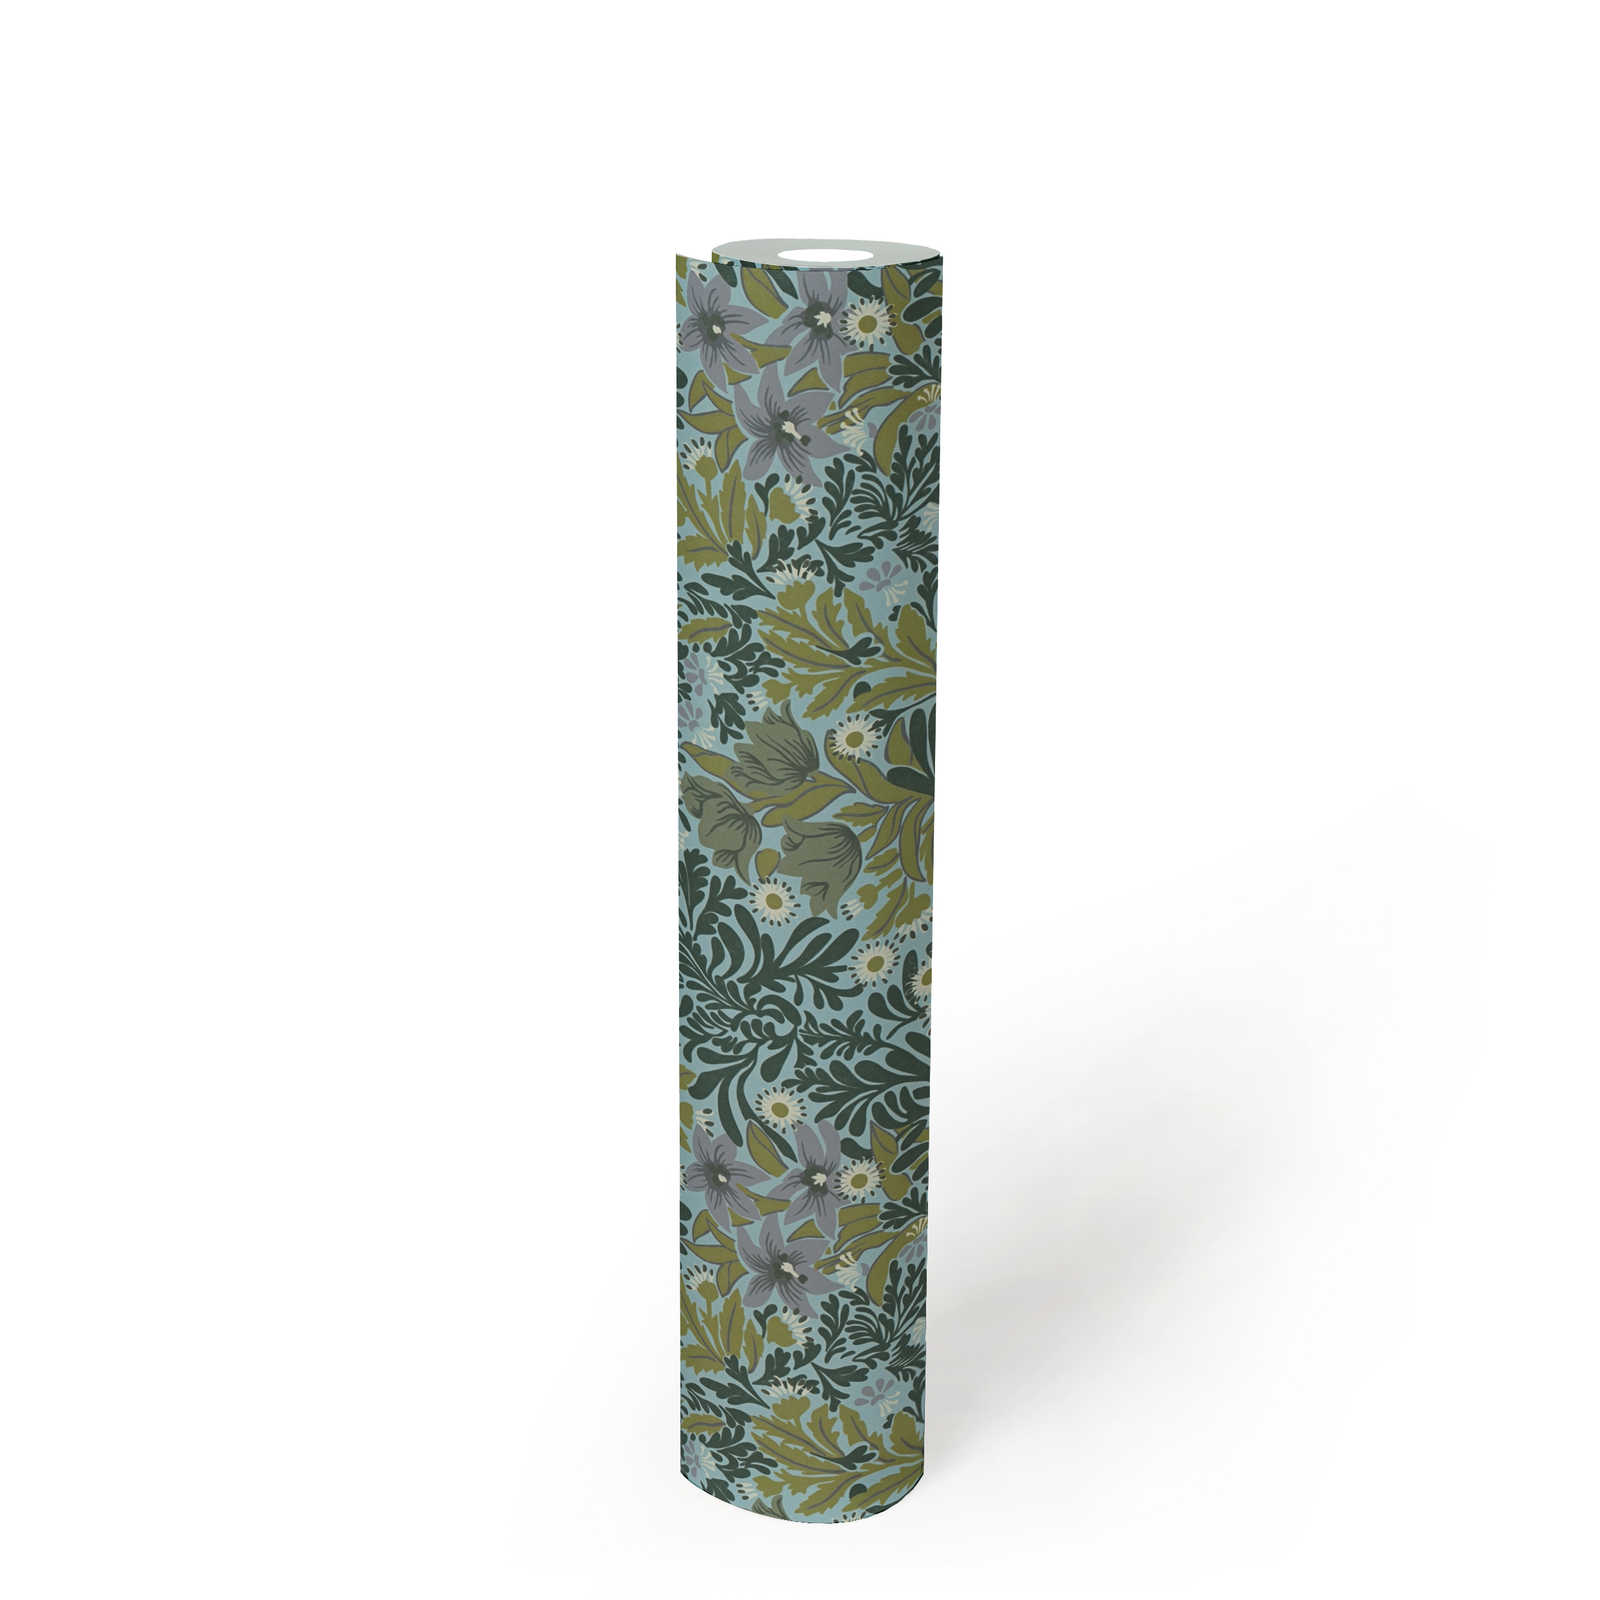             Natürliche Tapete mit verschiedenen Blüten und Sträuchern – Grün, Blau, Schwarz
        